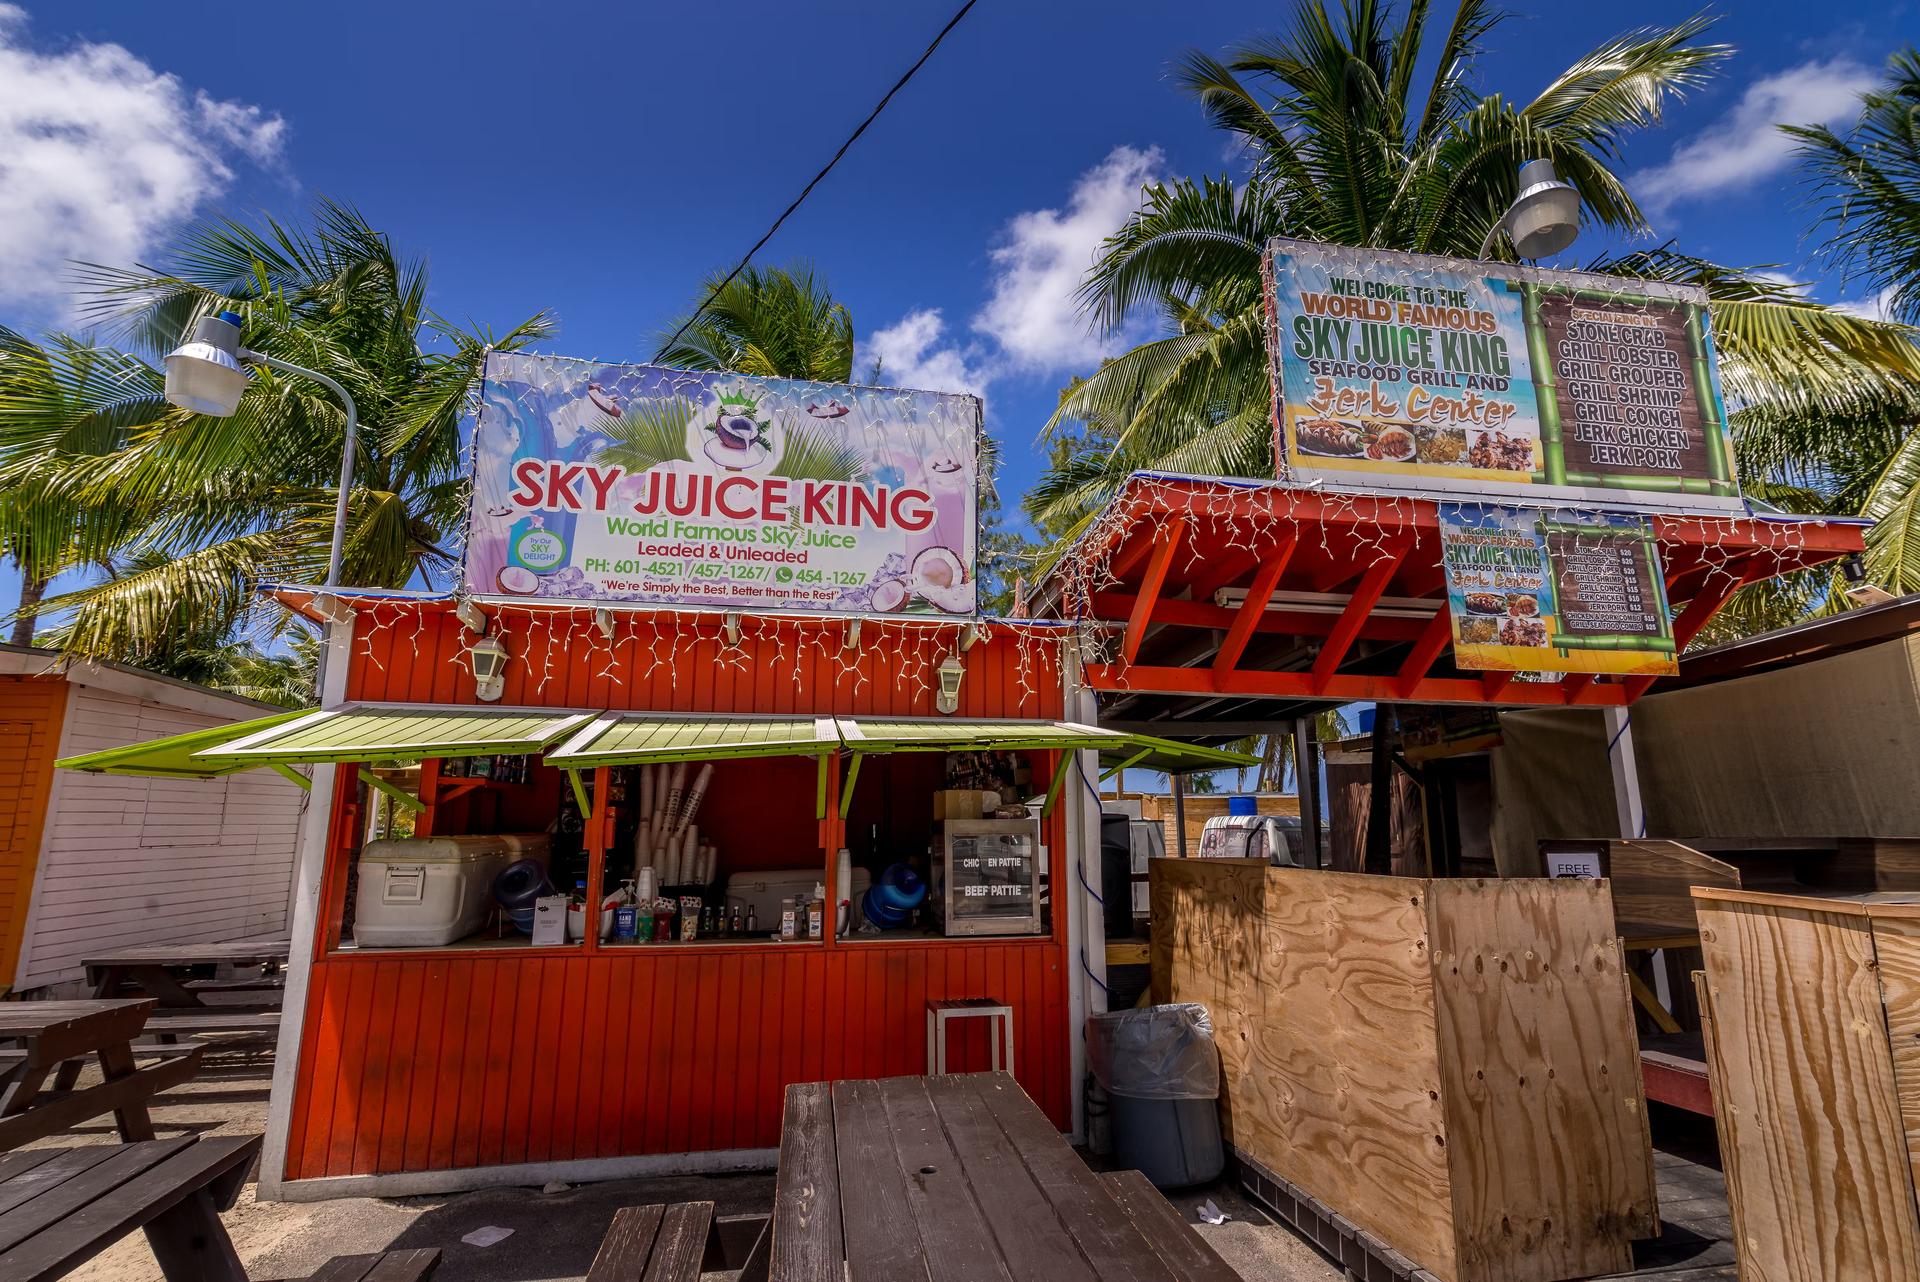 Sky-juice stalls at Arawak Cay Fish Fry, Nassau, New Providence, the Bahamas, Caribbean